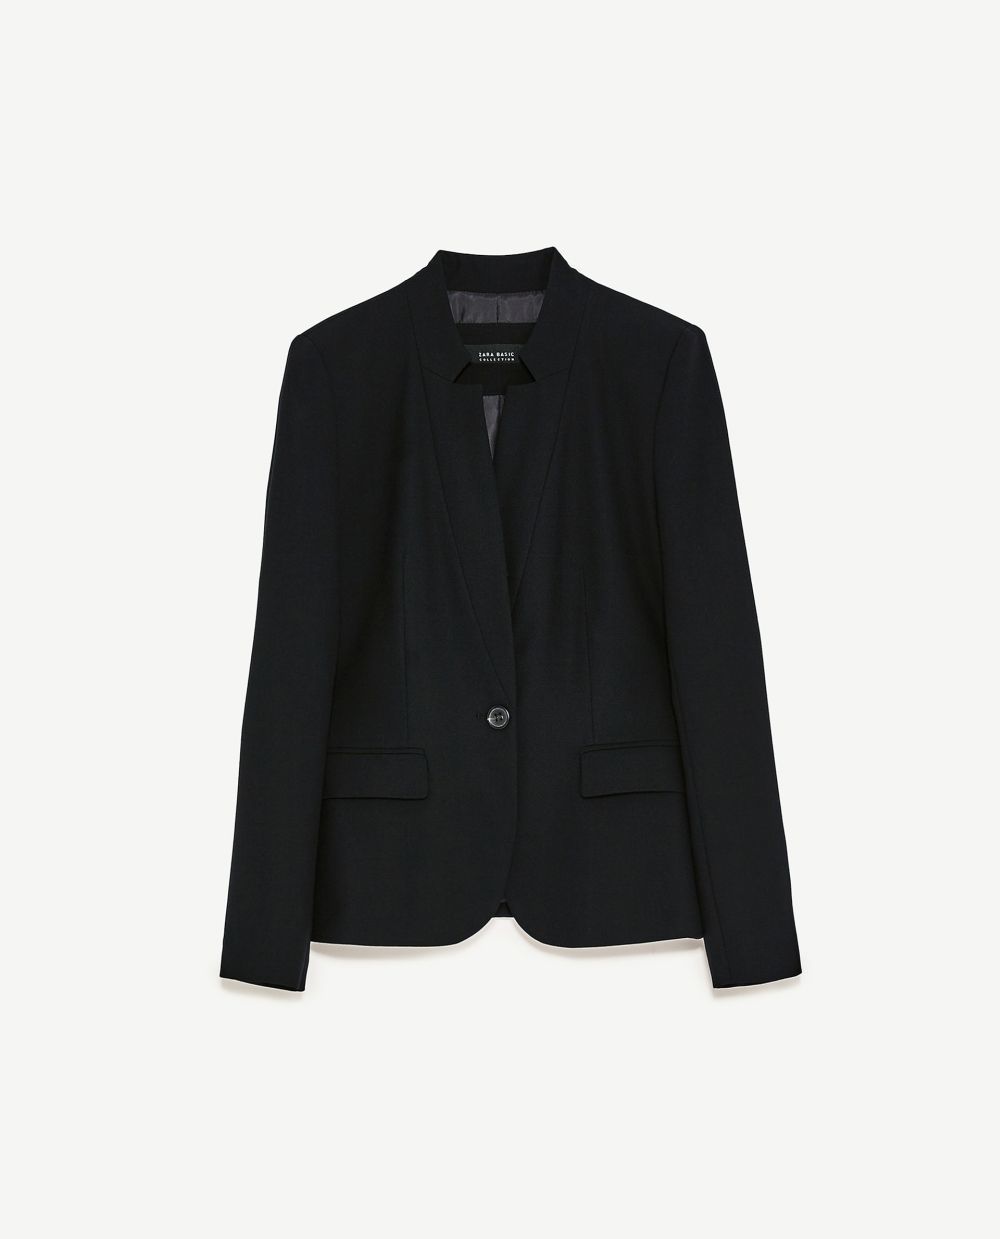 Blazer negra. De Zara (29,95 euros).